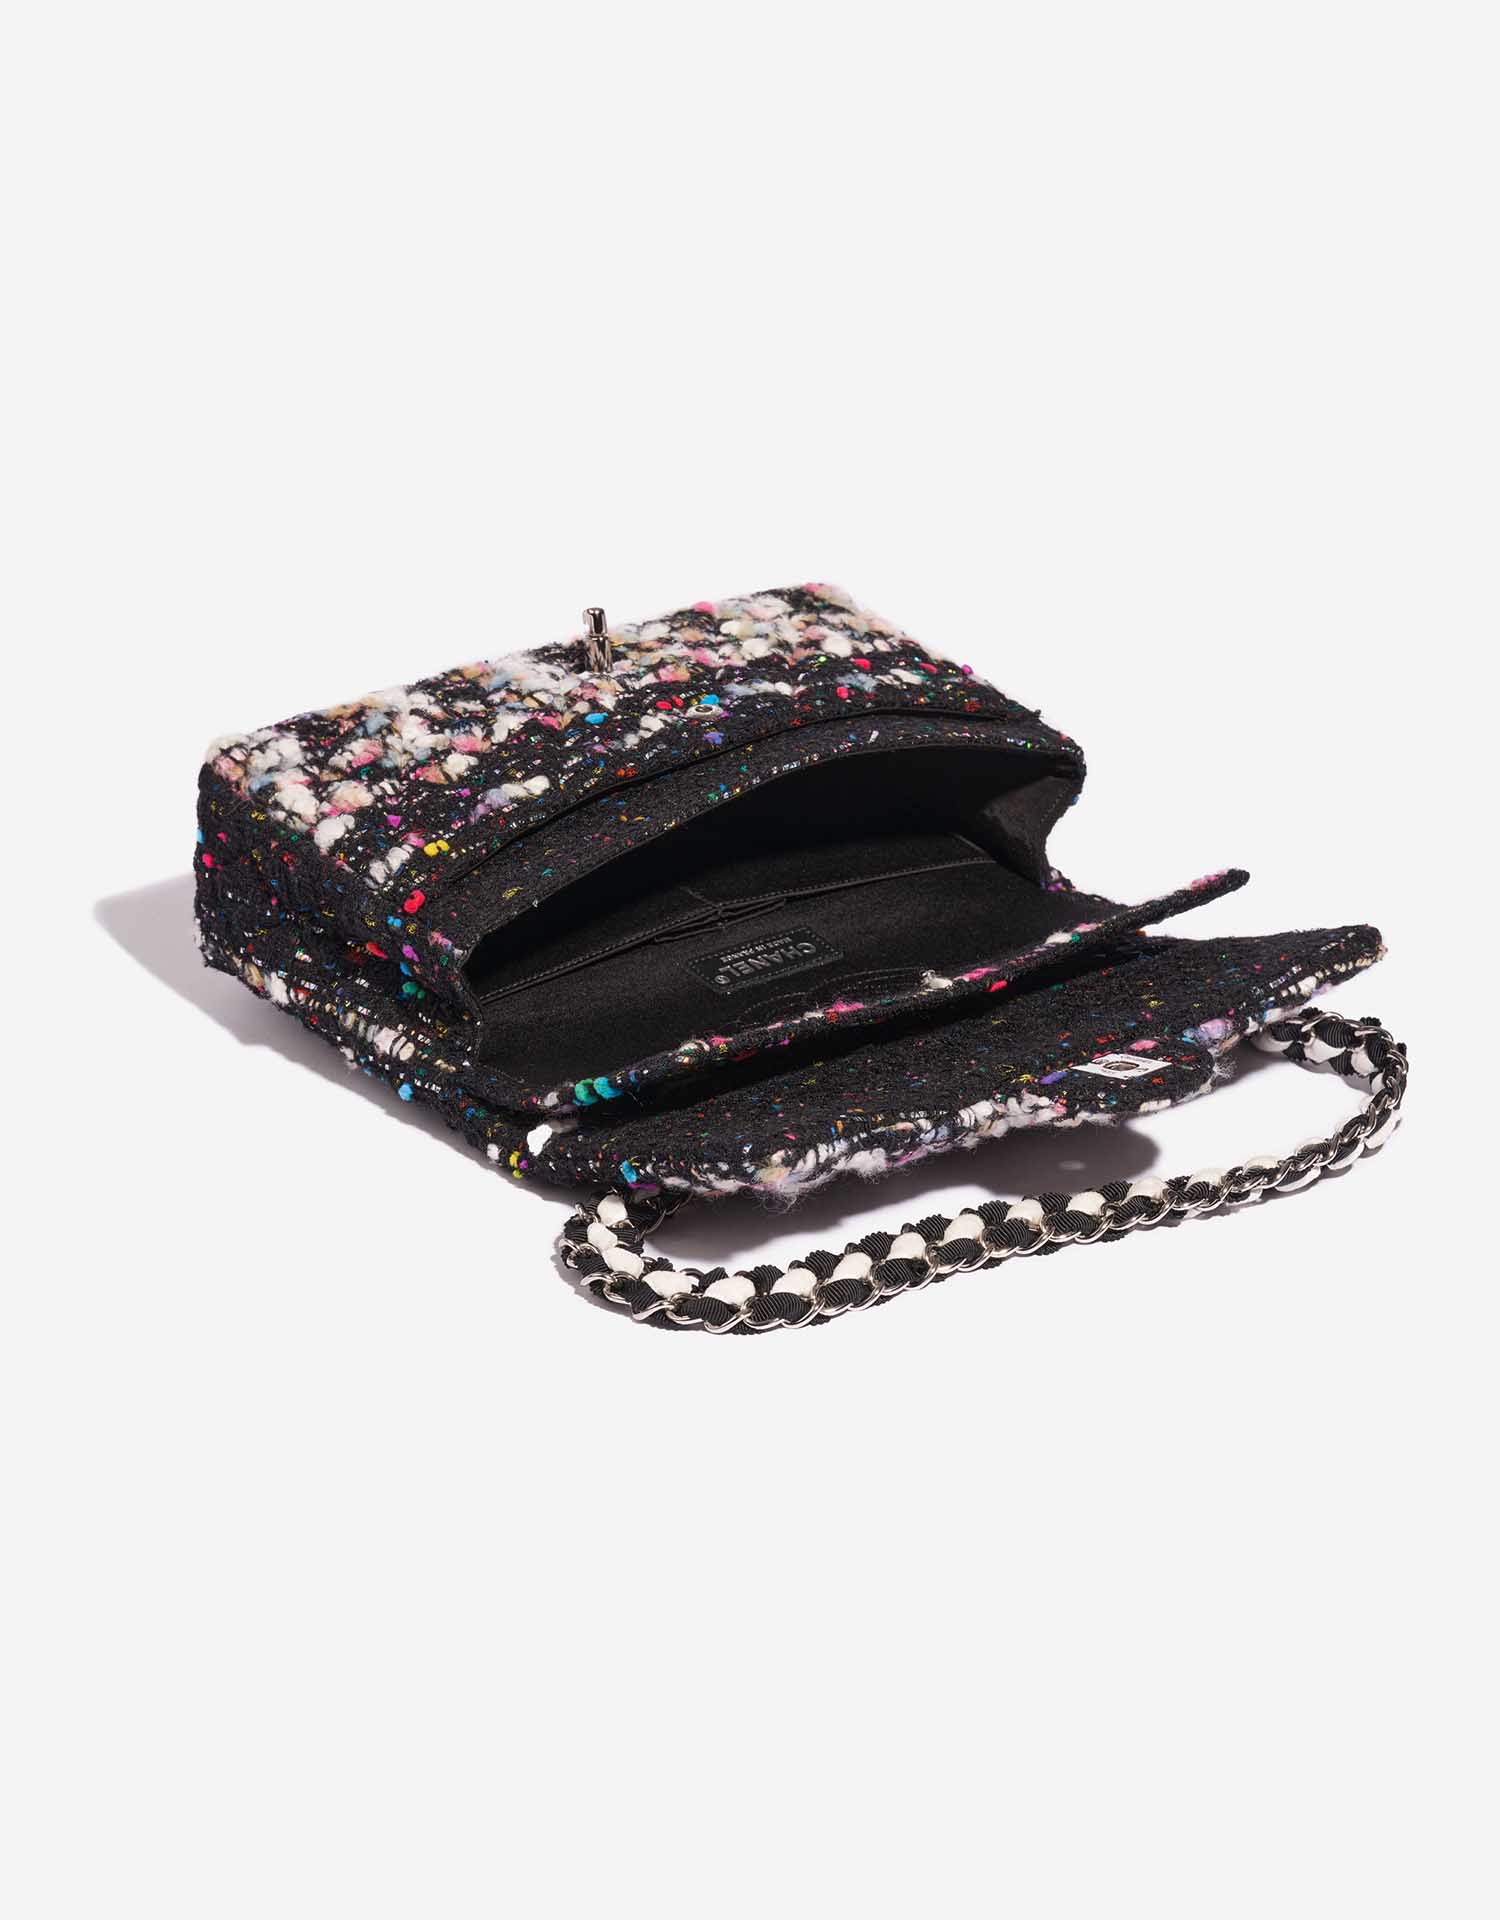 Sac Chanel d'occasion Timeless Medium Tweed Black / Multicolour Black, Multicolour Inside | Vendez votre sac de créateur sur Saclab.com